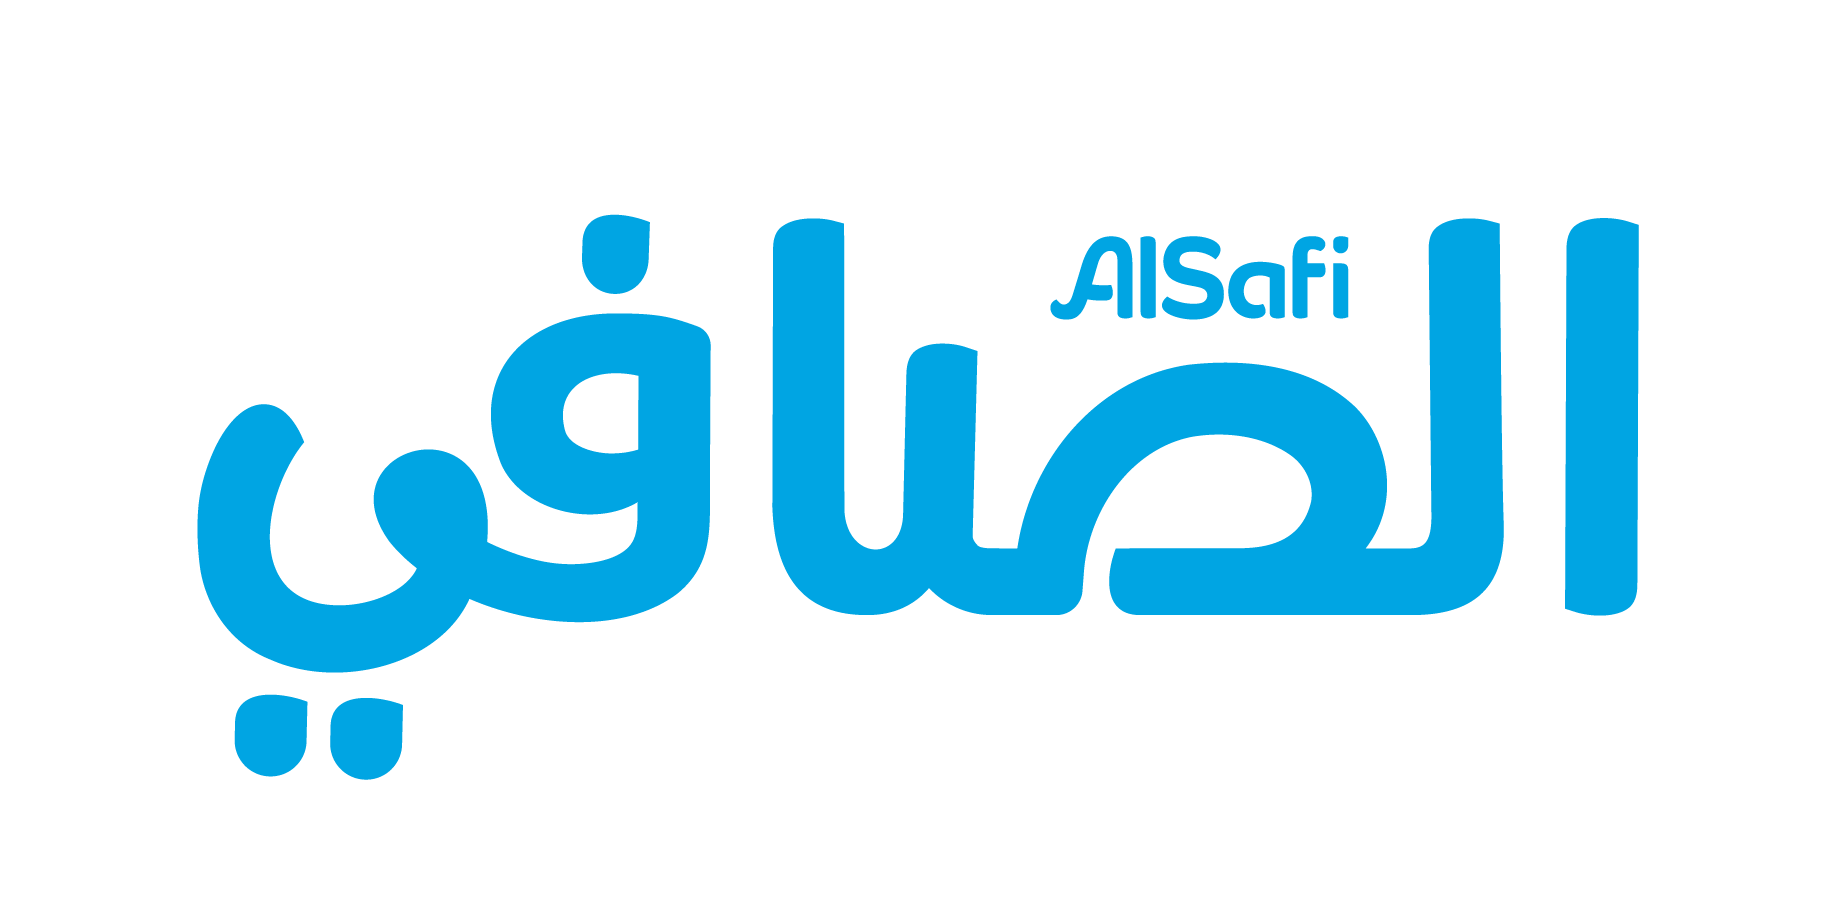 Alsafi